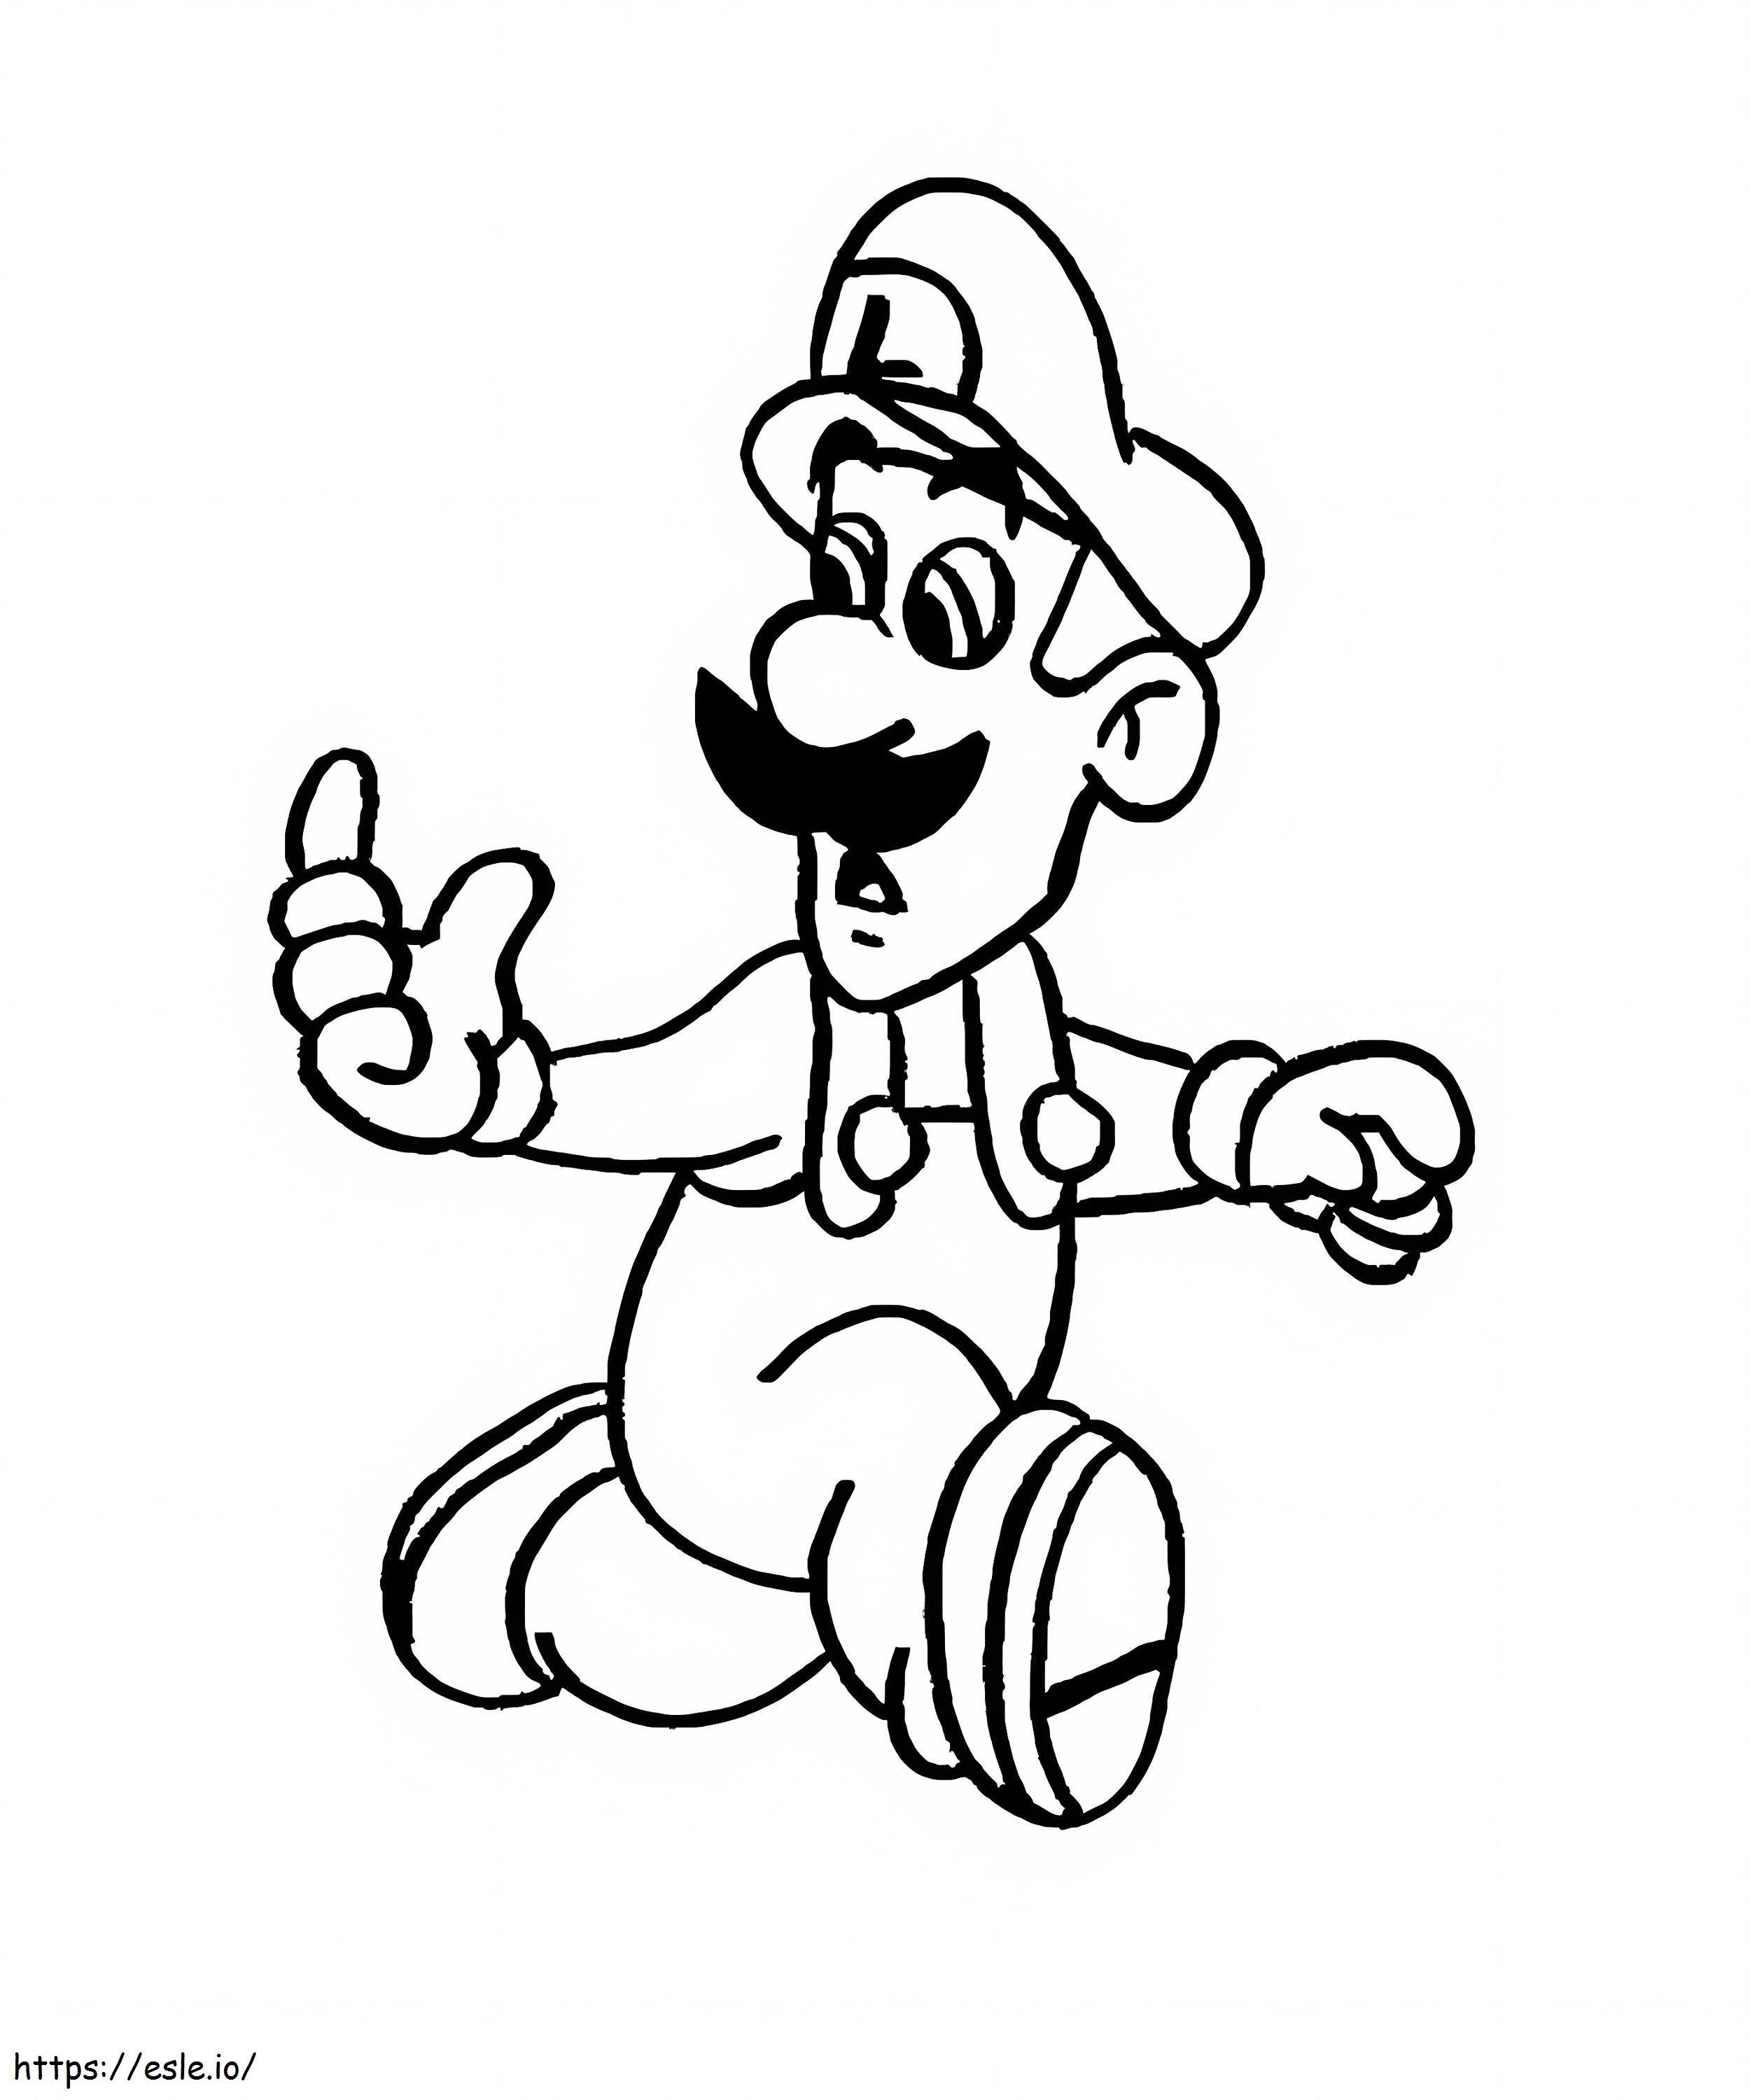 Coloriage Luigi et le monstre à imprimer dessin